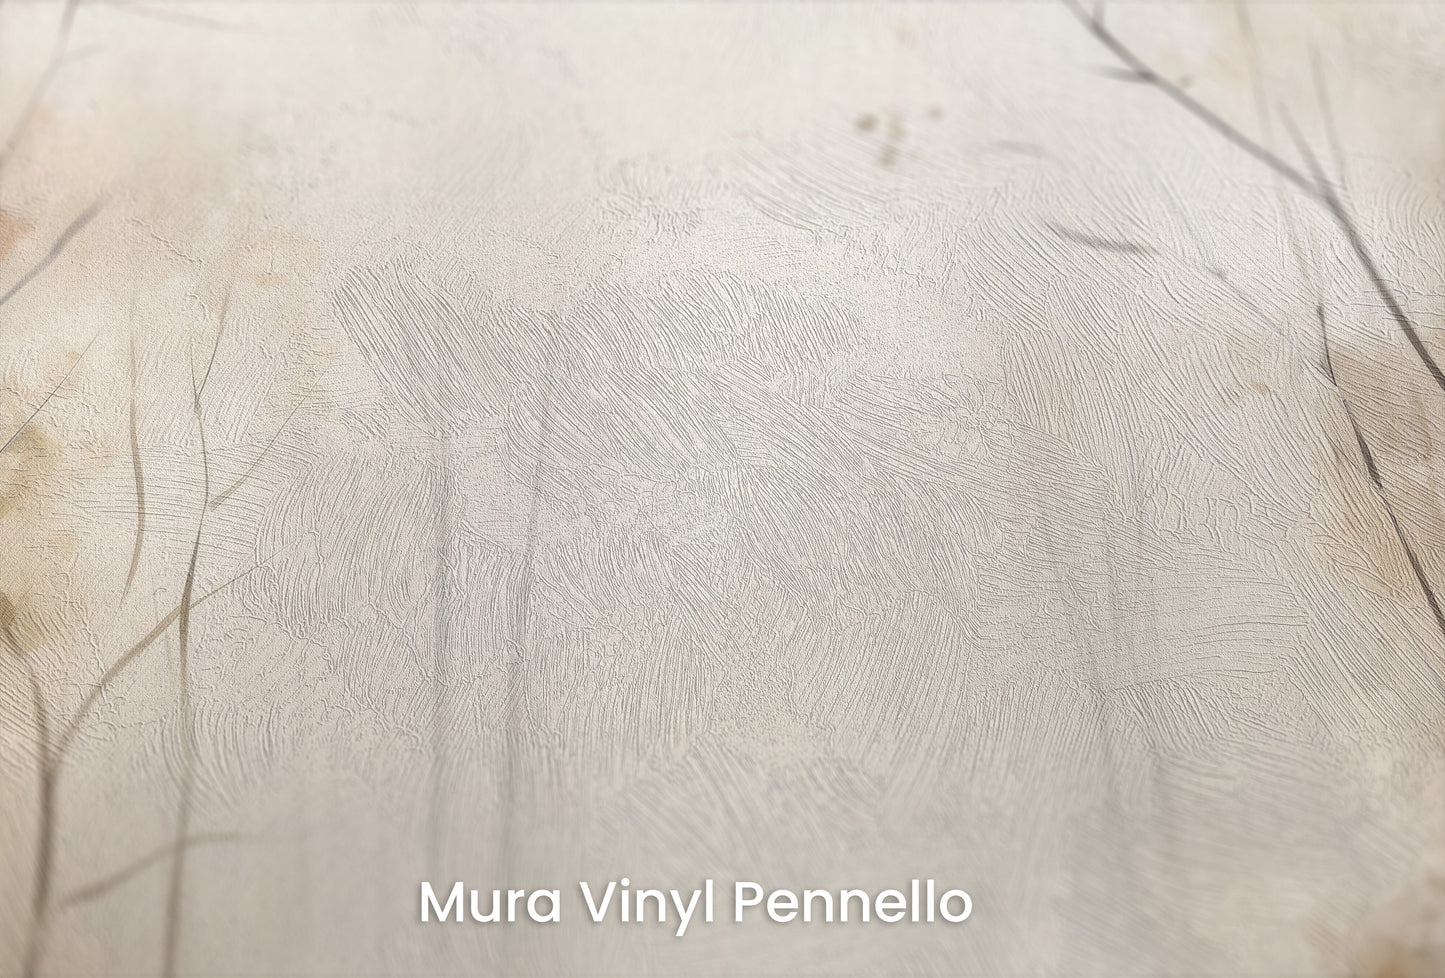 Zbliżenie na artystyczną fototapetę o nazwie AUTUMNAL MORNING HAZE MURAL na podłożu Mura Vinyl Pennello - faktura pociągnięć pędzla malarskiego.